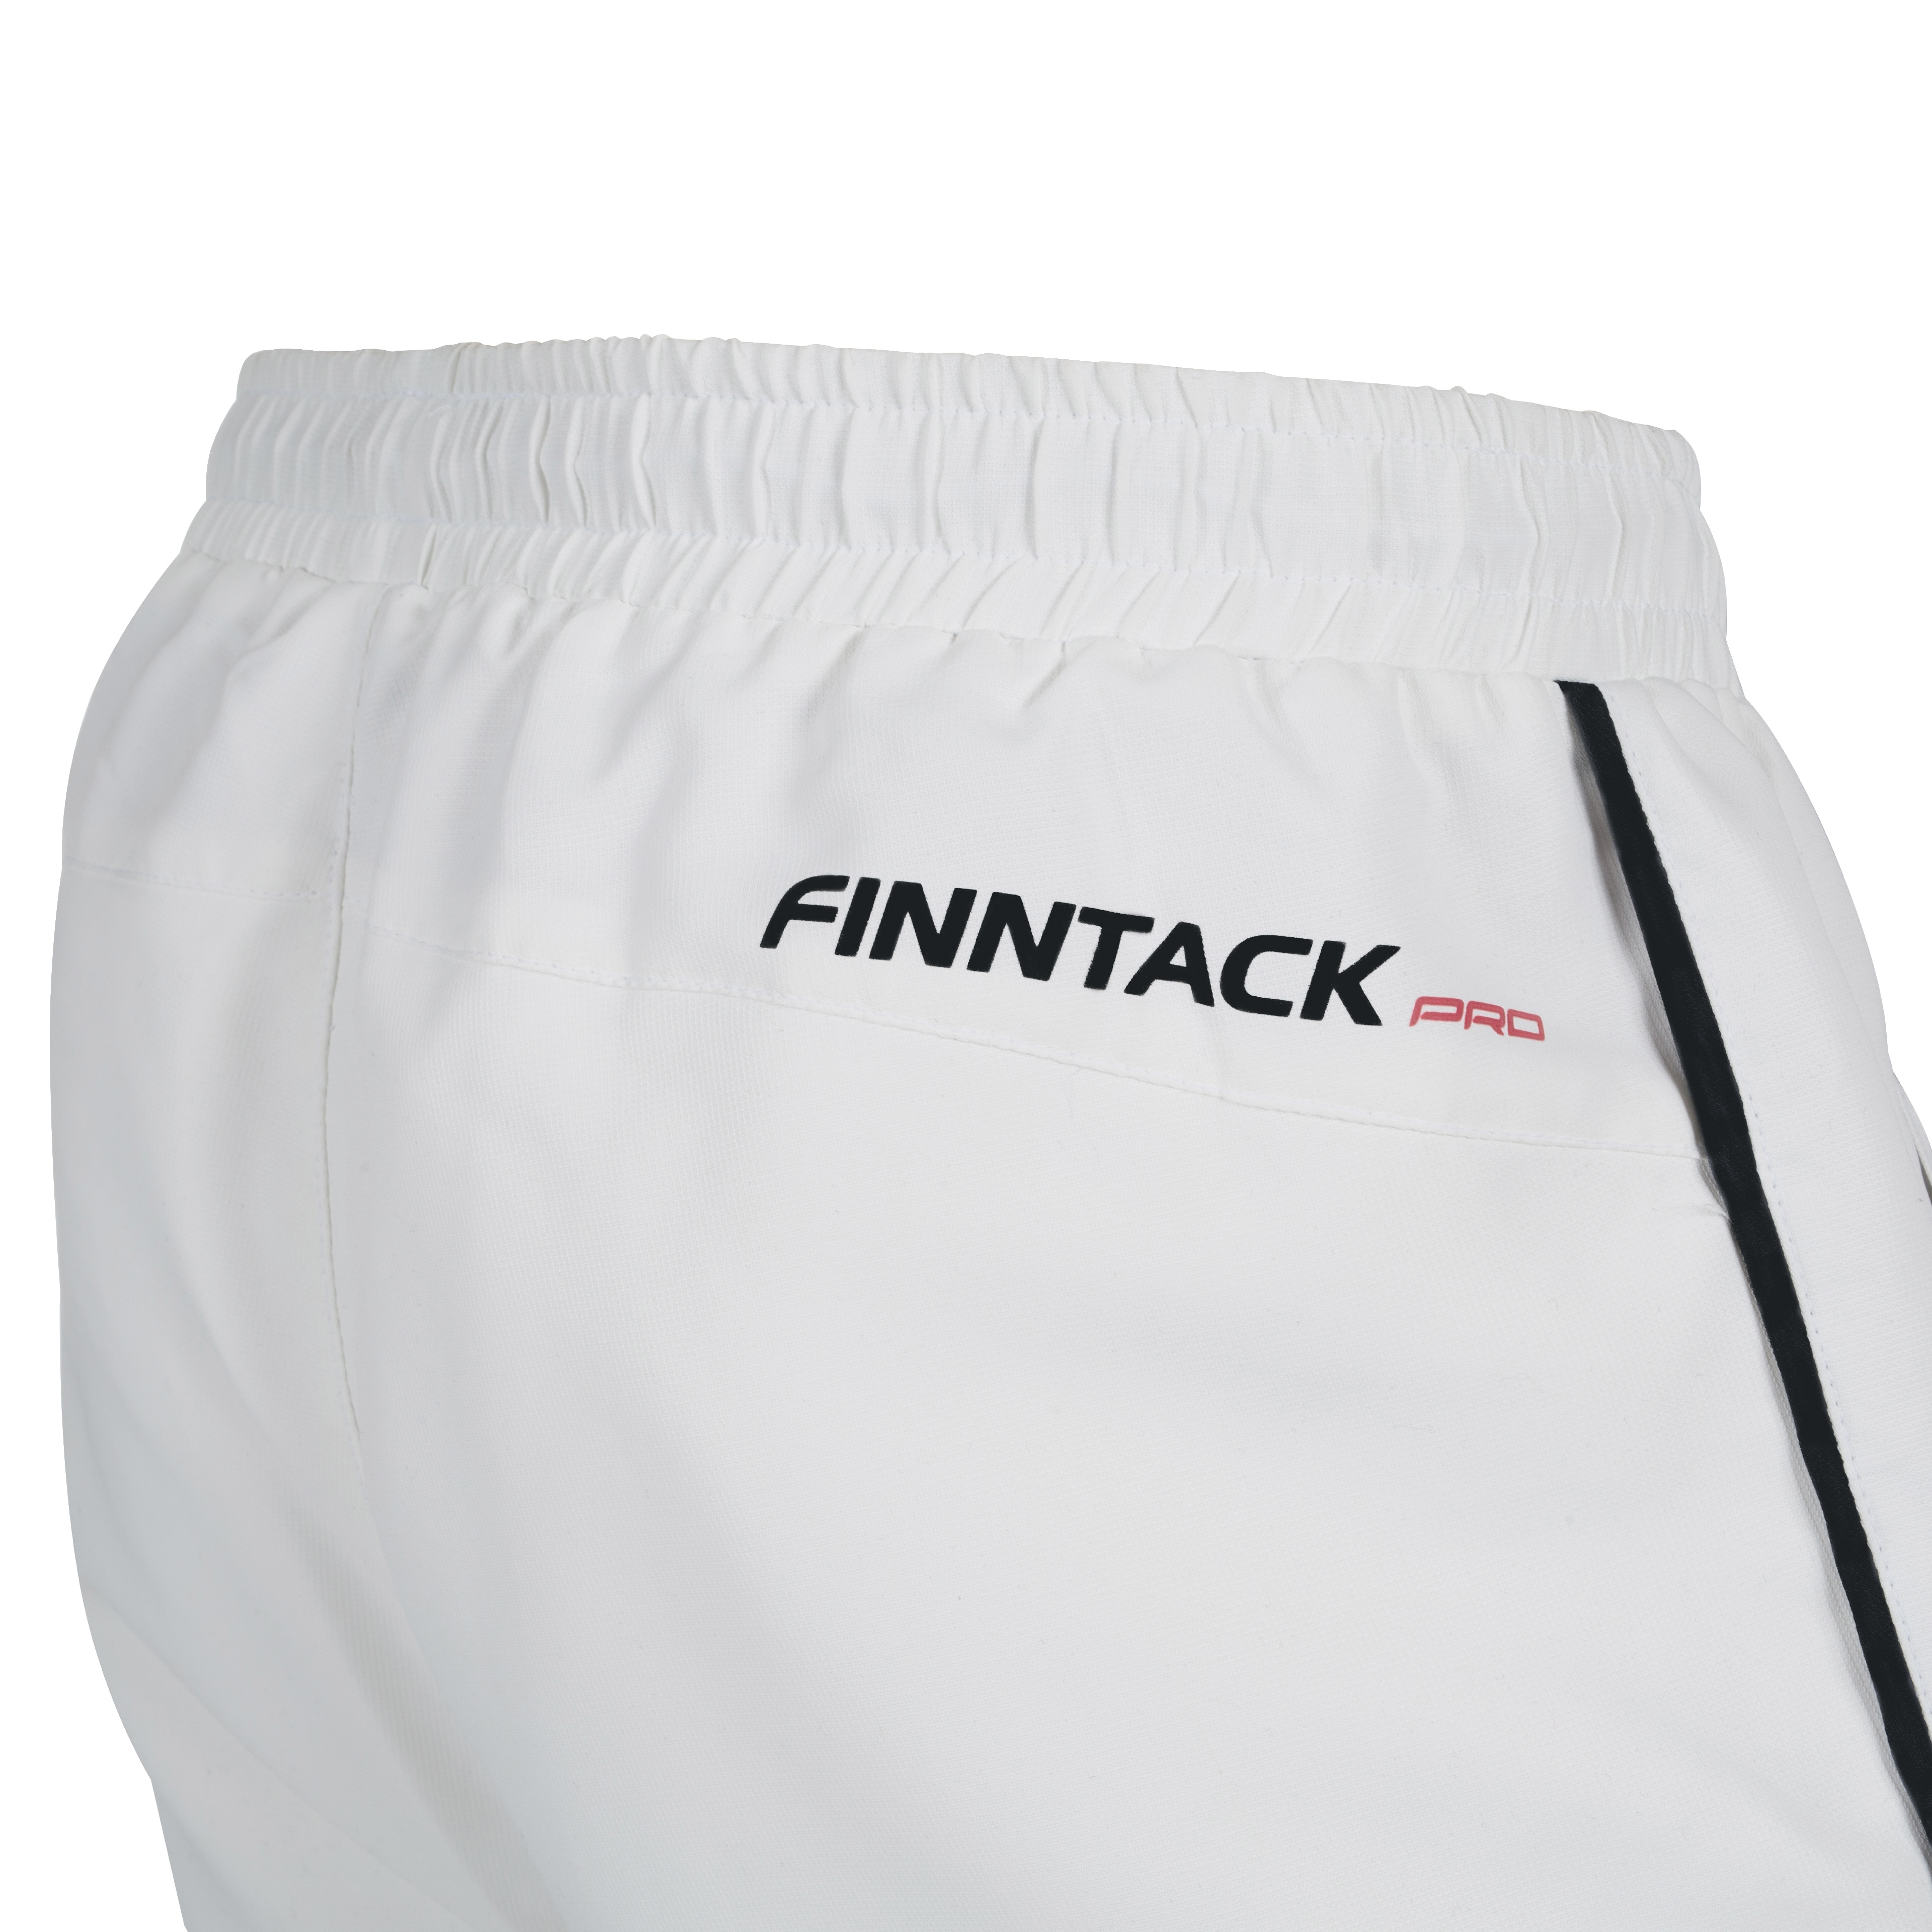 Finntack Pro Unisex kesäkilpahousut